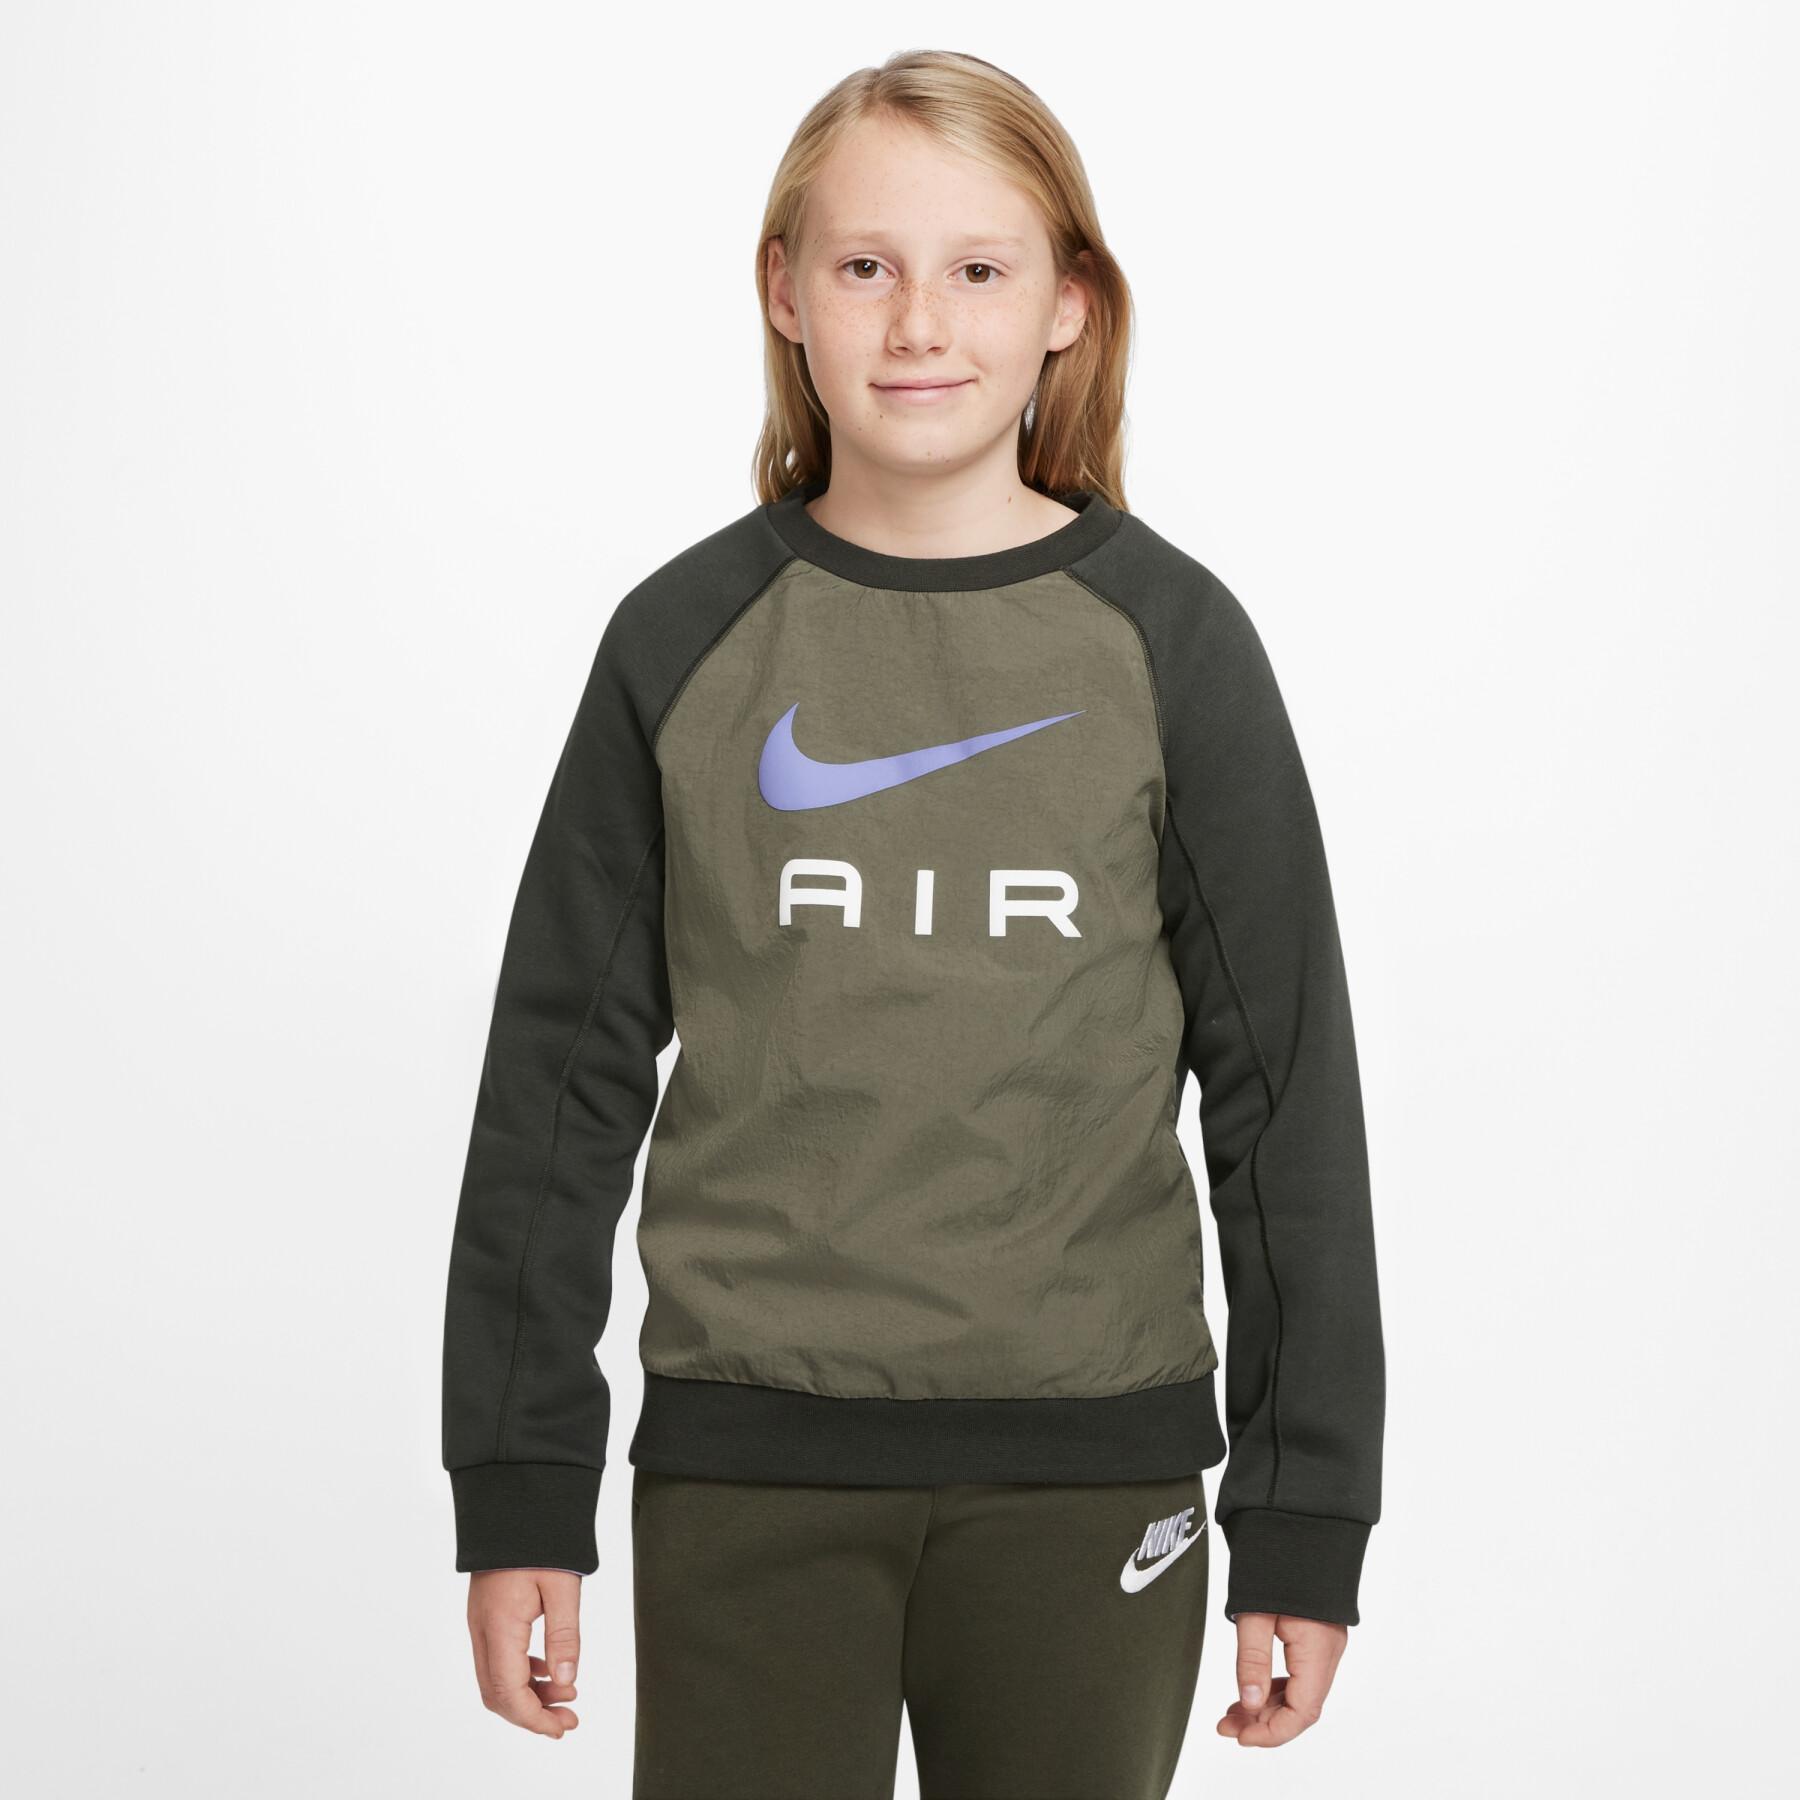 Sweat Nike Air Junior - Kaki/Blanc/Violet